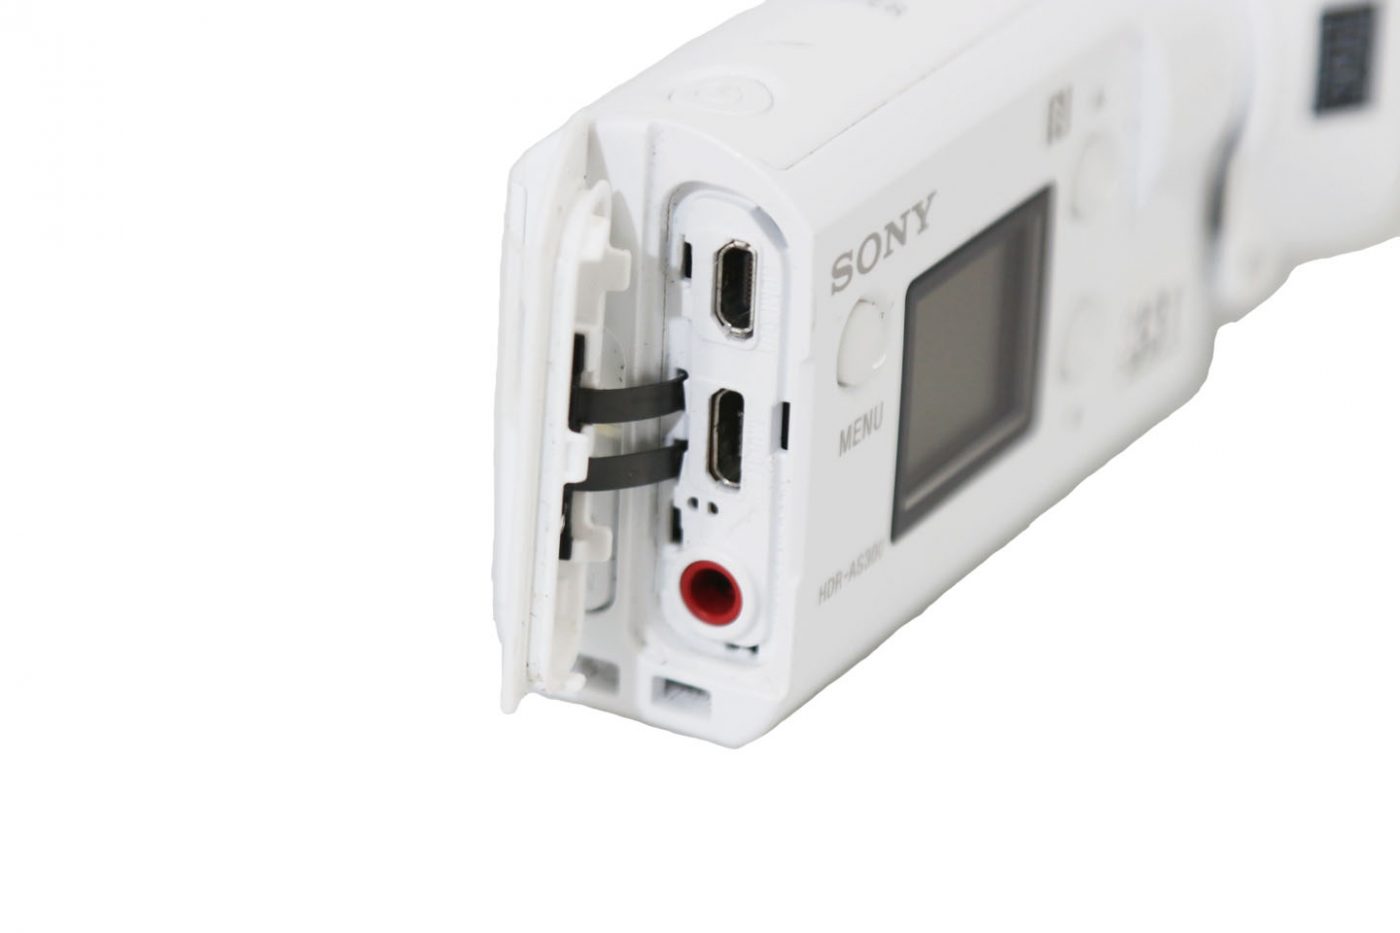 SONY HDR-AS300R ソニーアクションカメラ